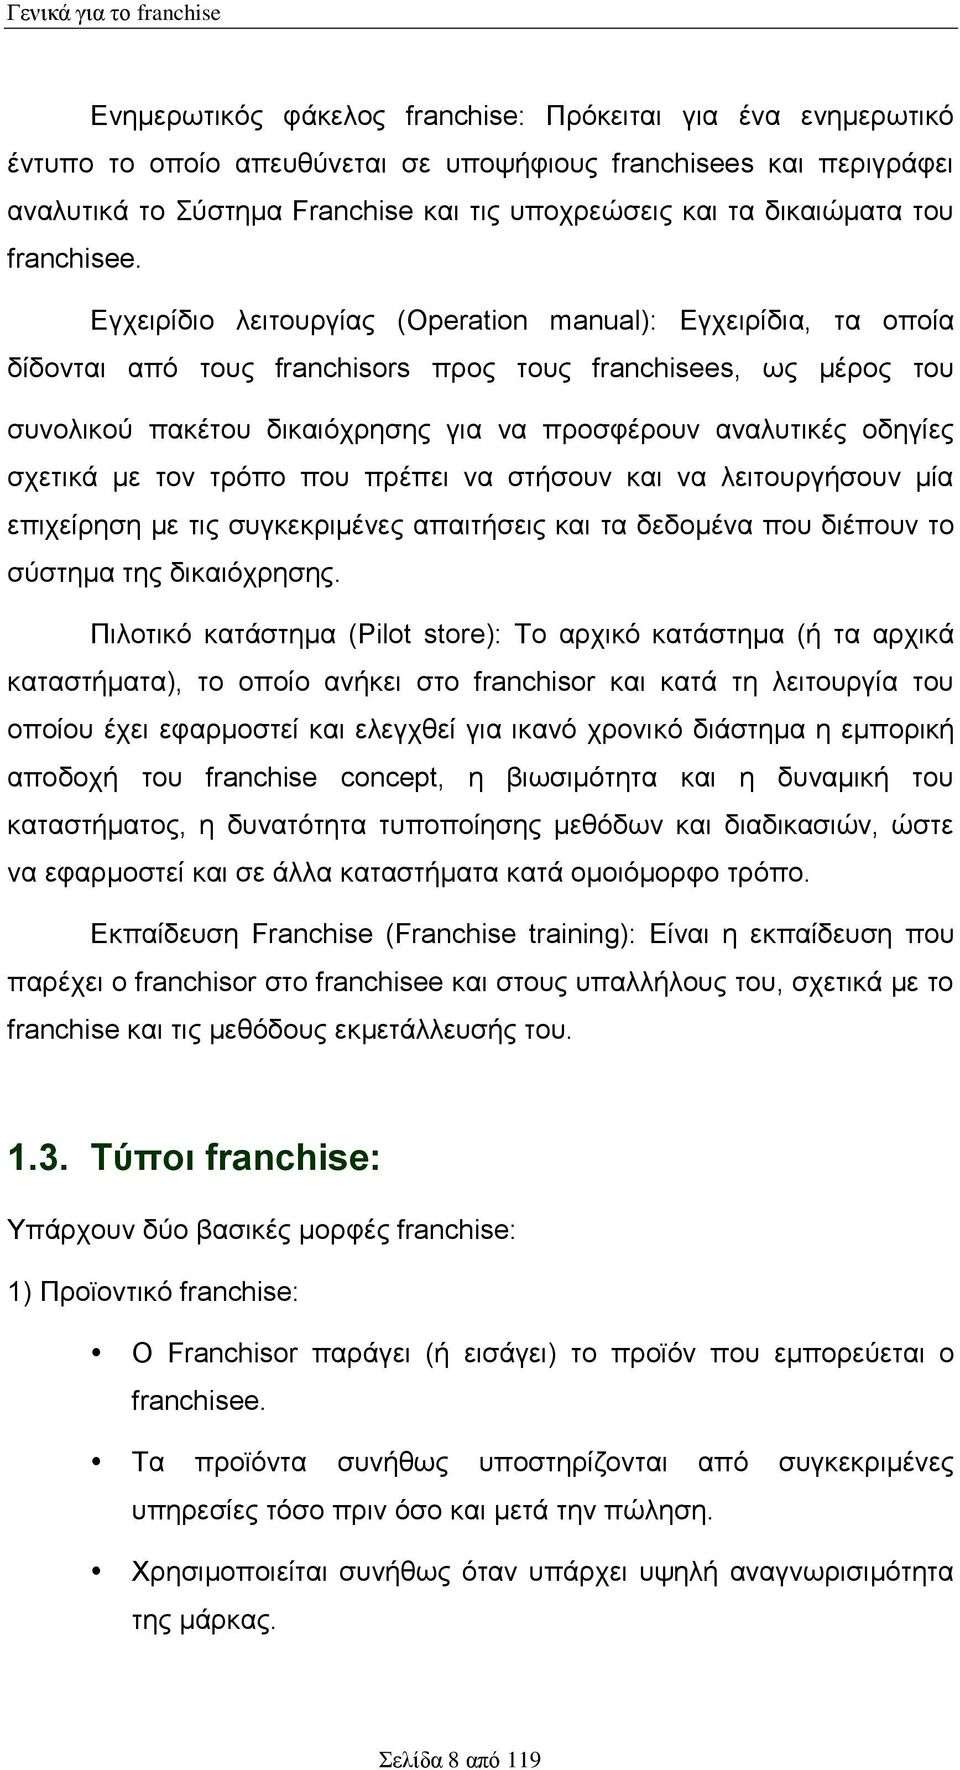 Εγχειρίδιο λειτουργίας (Operation manual): Εγχειρίδια, τα οποία δίδονται από τους franchisors προς τους franchisees, ως μέρος του συνολικού πακέτου δικαιόχρησης για να προσφέρουν αναλυτικές οδηγίες